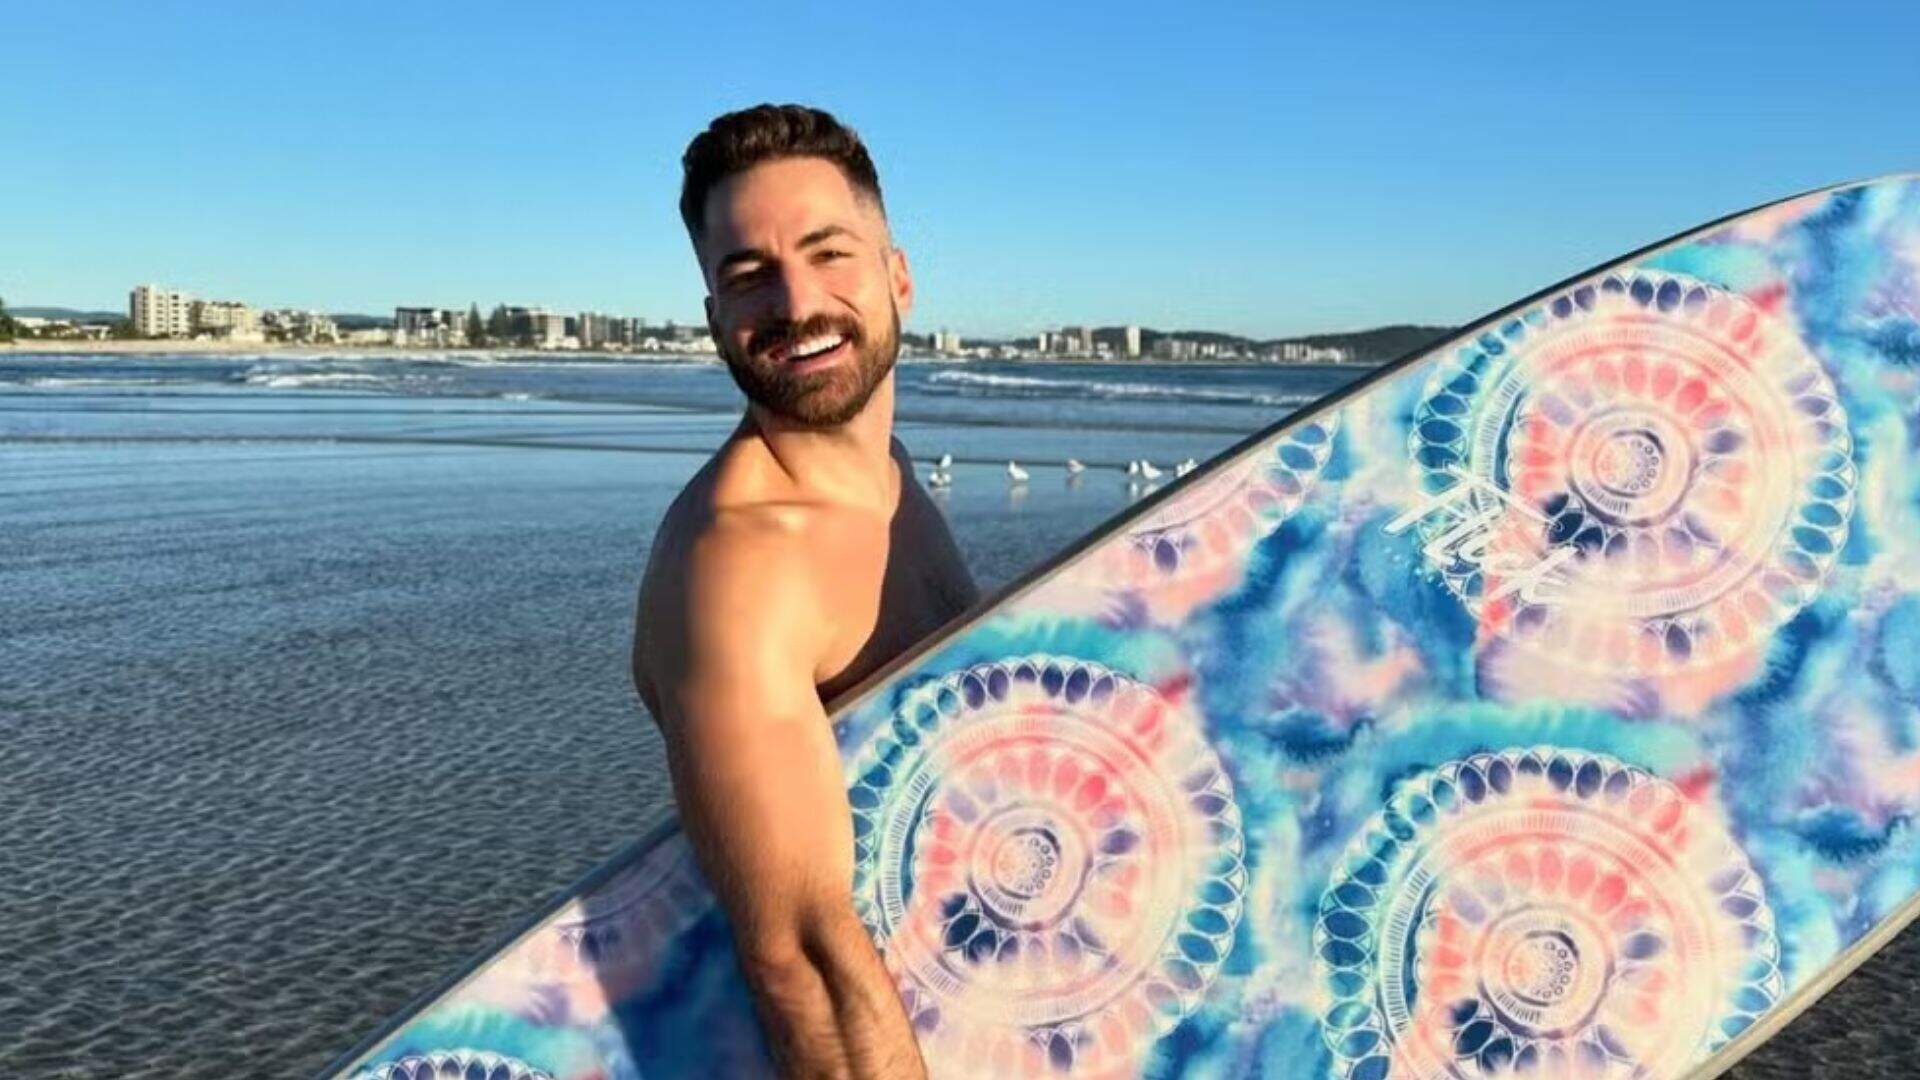 Na Austrália, Thales Bretas aproveita dia de sol e mostra rotina de surfe nas redes sociais